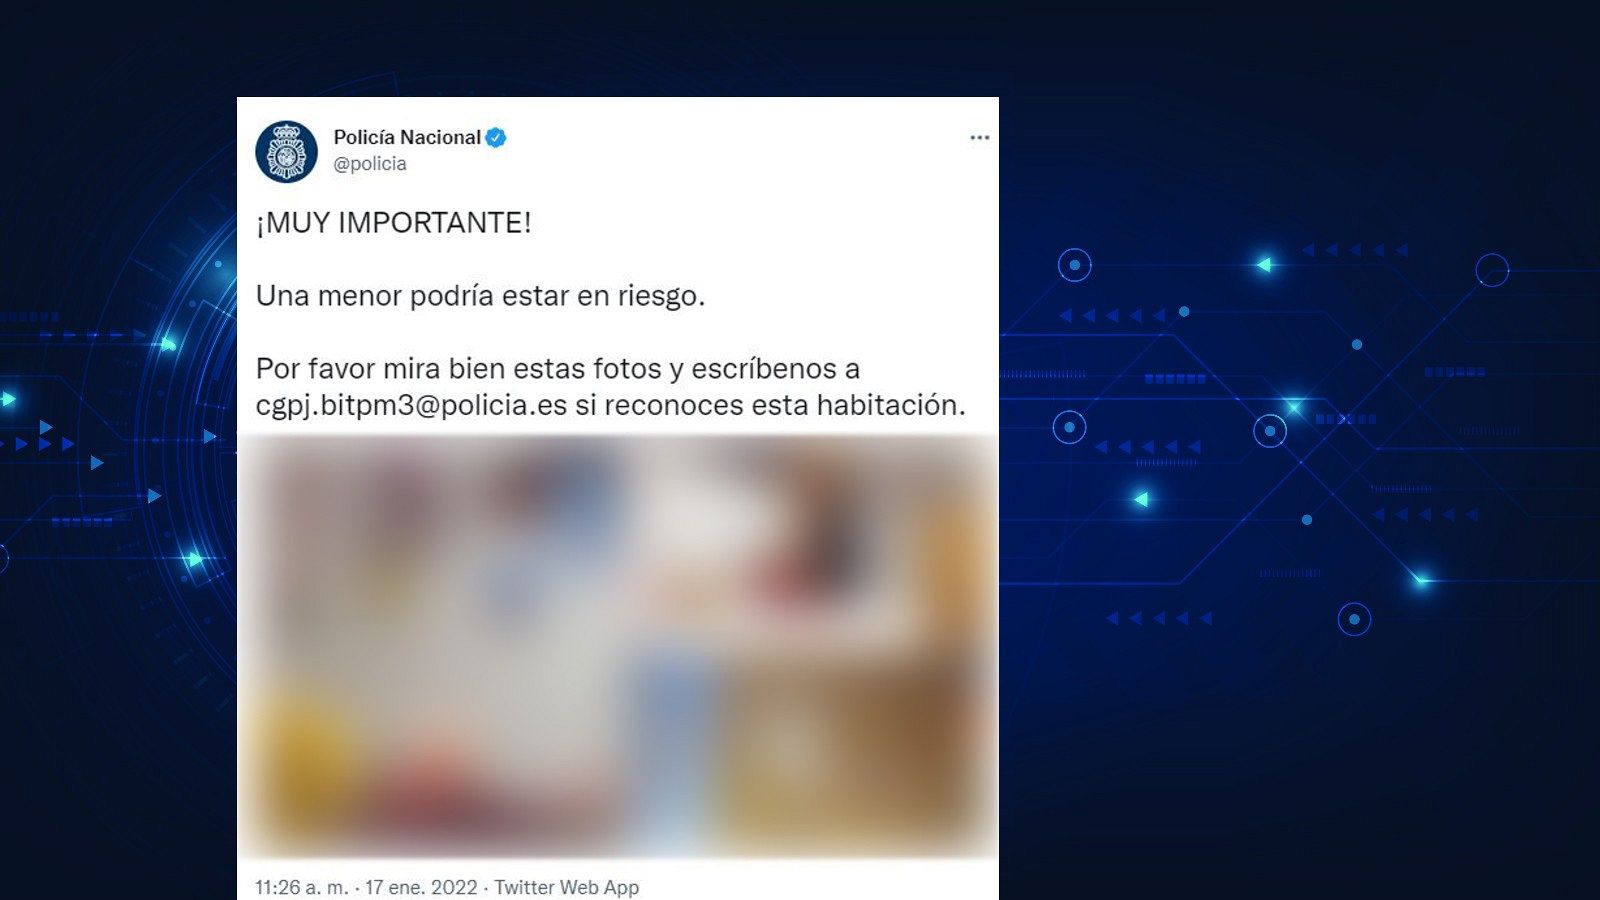 Pantallazo del tuit de la Policía Nacional pidendo colaboración ciudadana para identificar un cuarto infantil